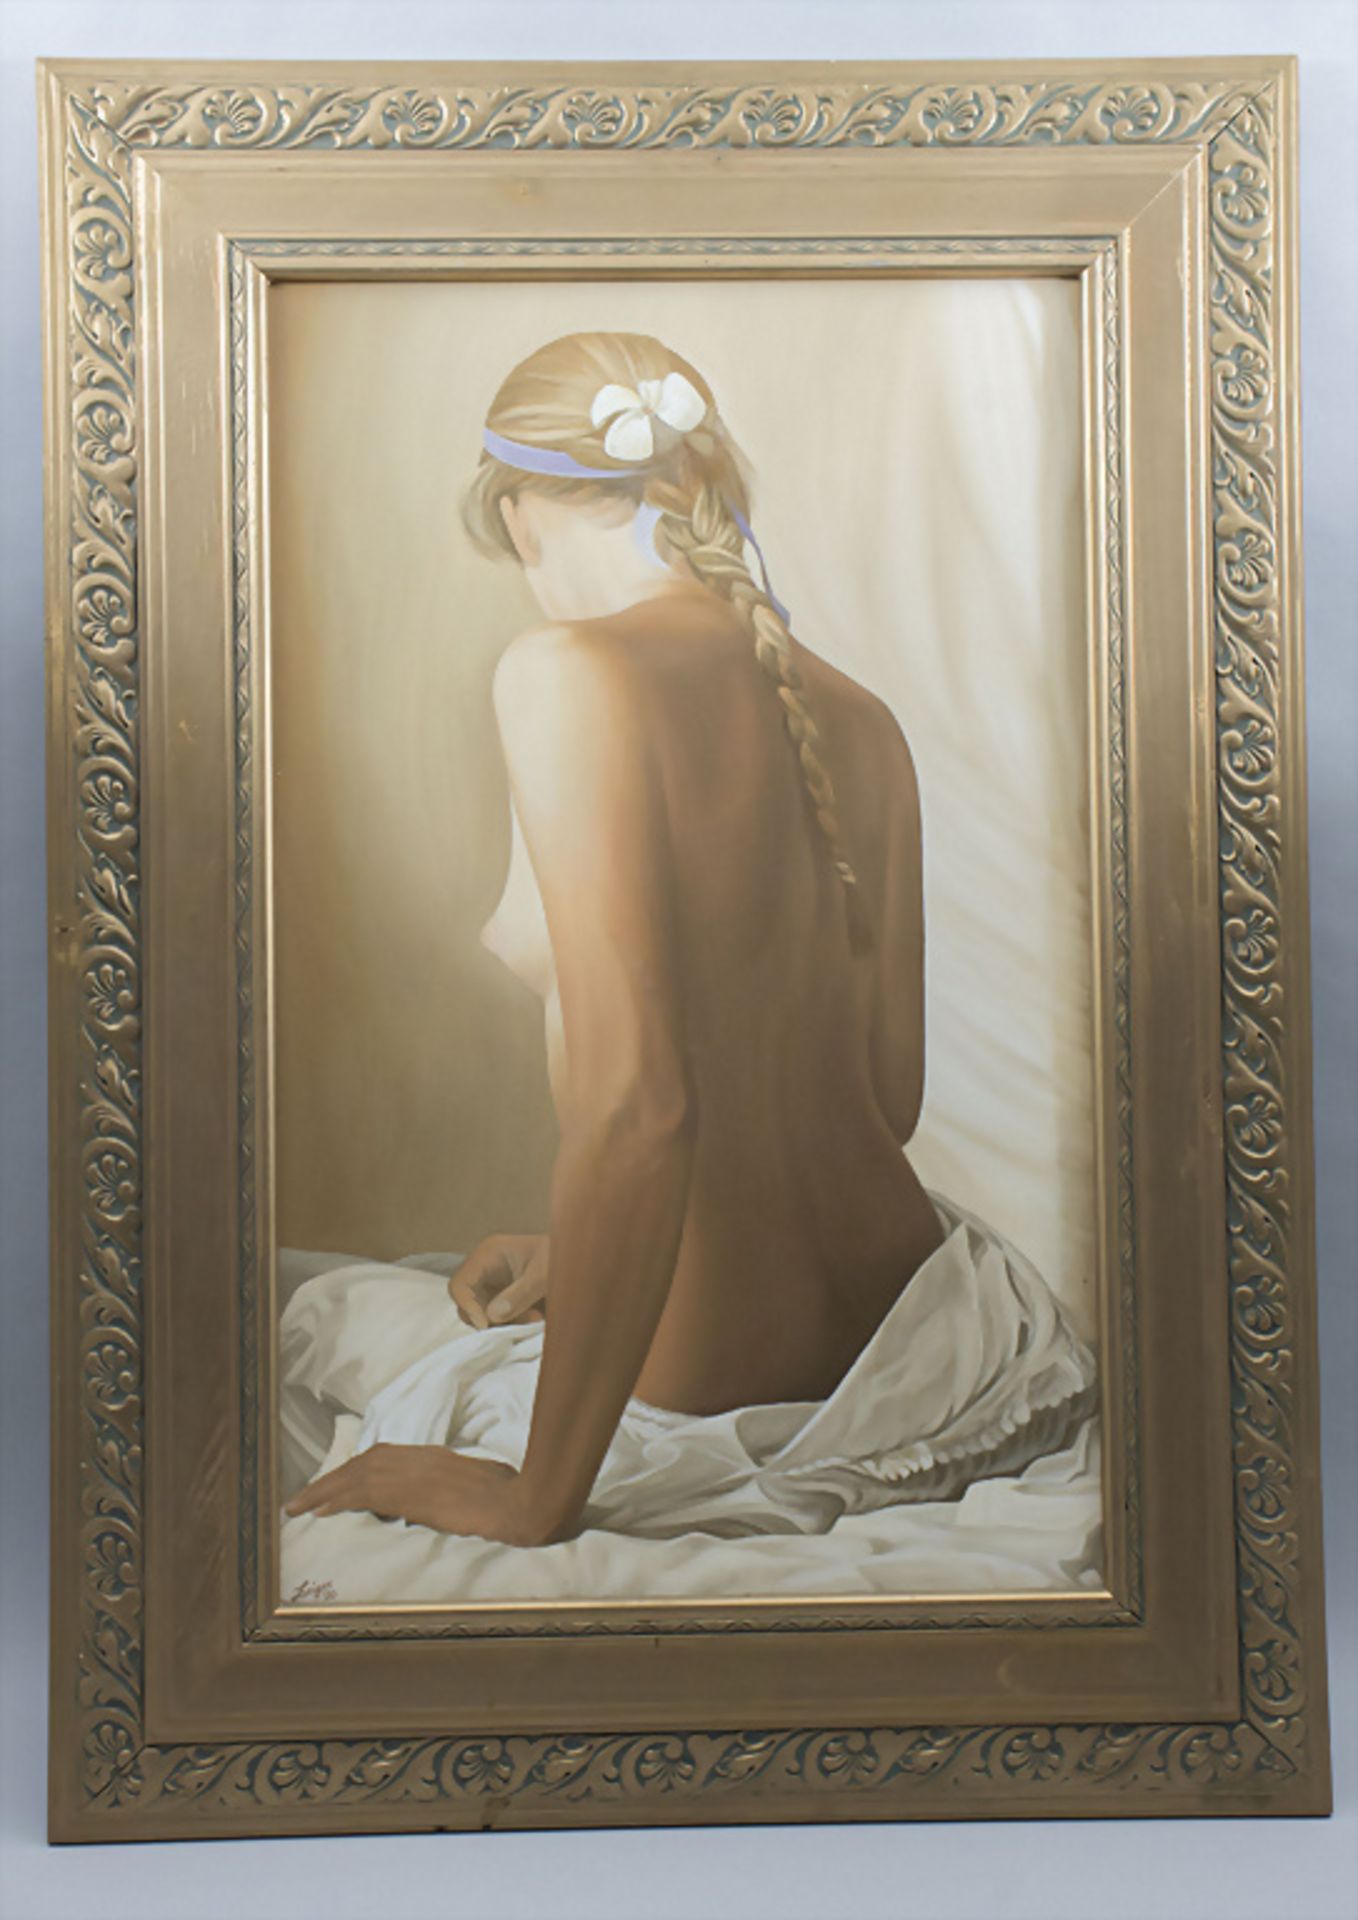 Michael Zeiger (21. Jh.), 'Sitzender weiblicher Akt' / 'A sitting female nude', 2000 - Bild 2 aus 6